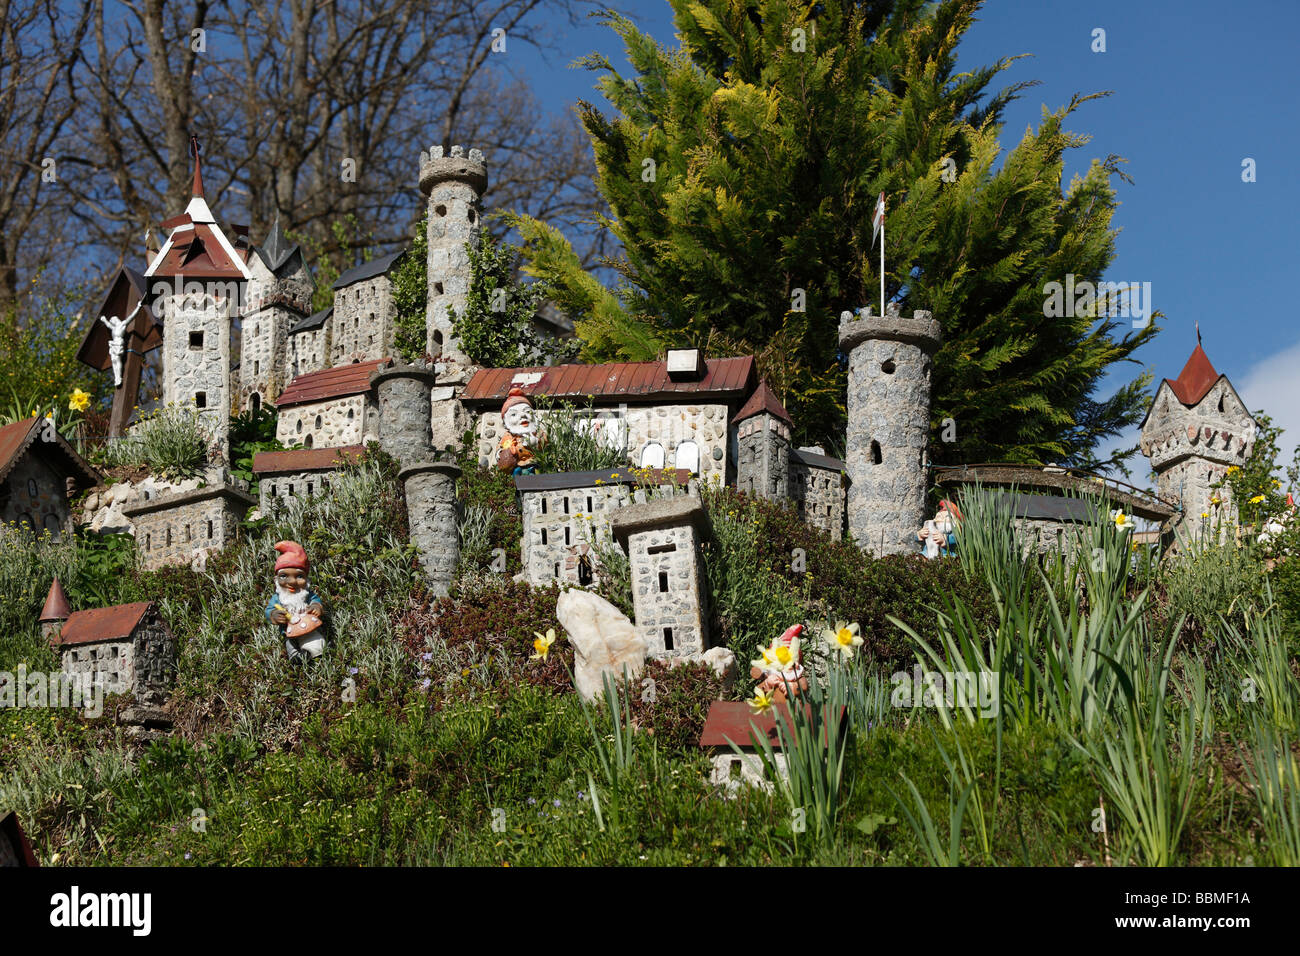 Garden gnomes and model castles in a garden in Sarleinsbach, Muehlviertel, Upper Austria, Austria, Europe Stock Photo